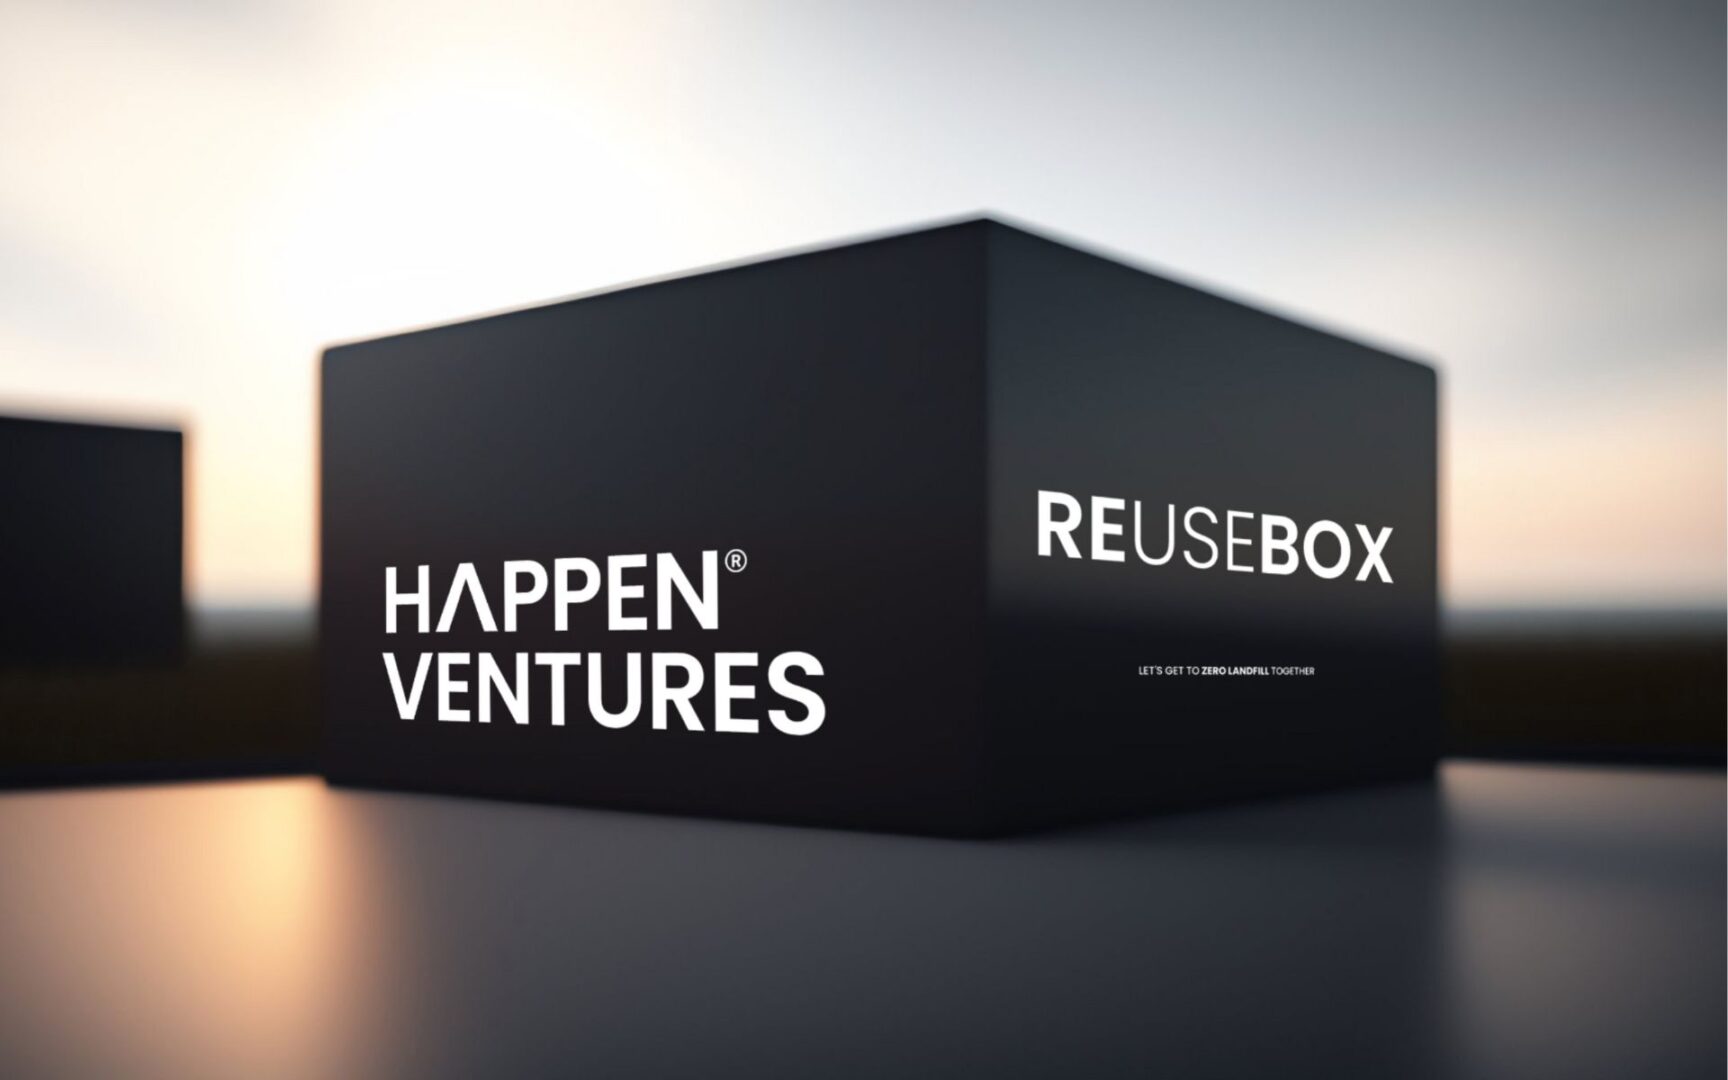 Happen Ventures Reusebox